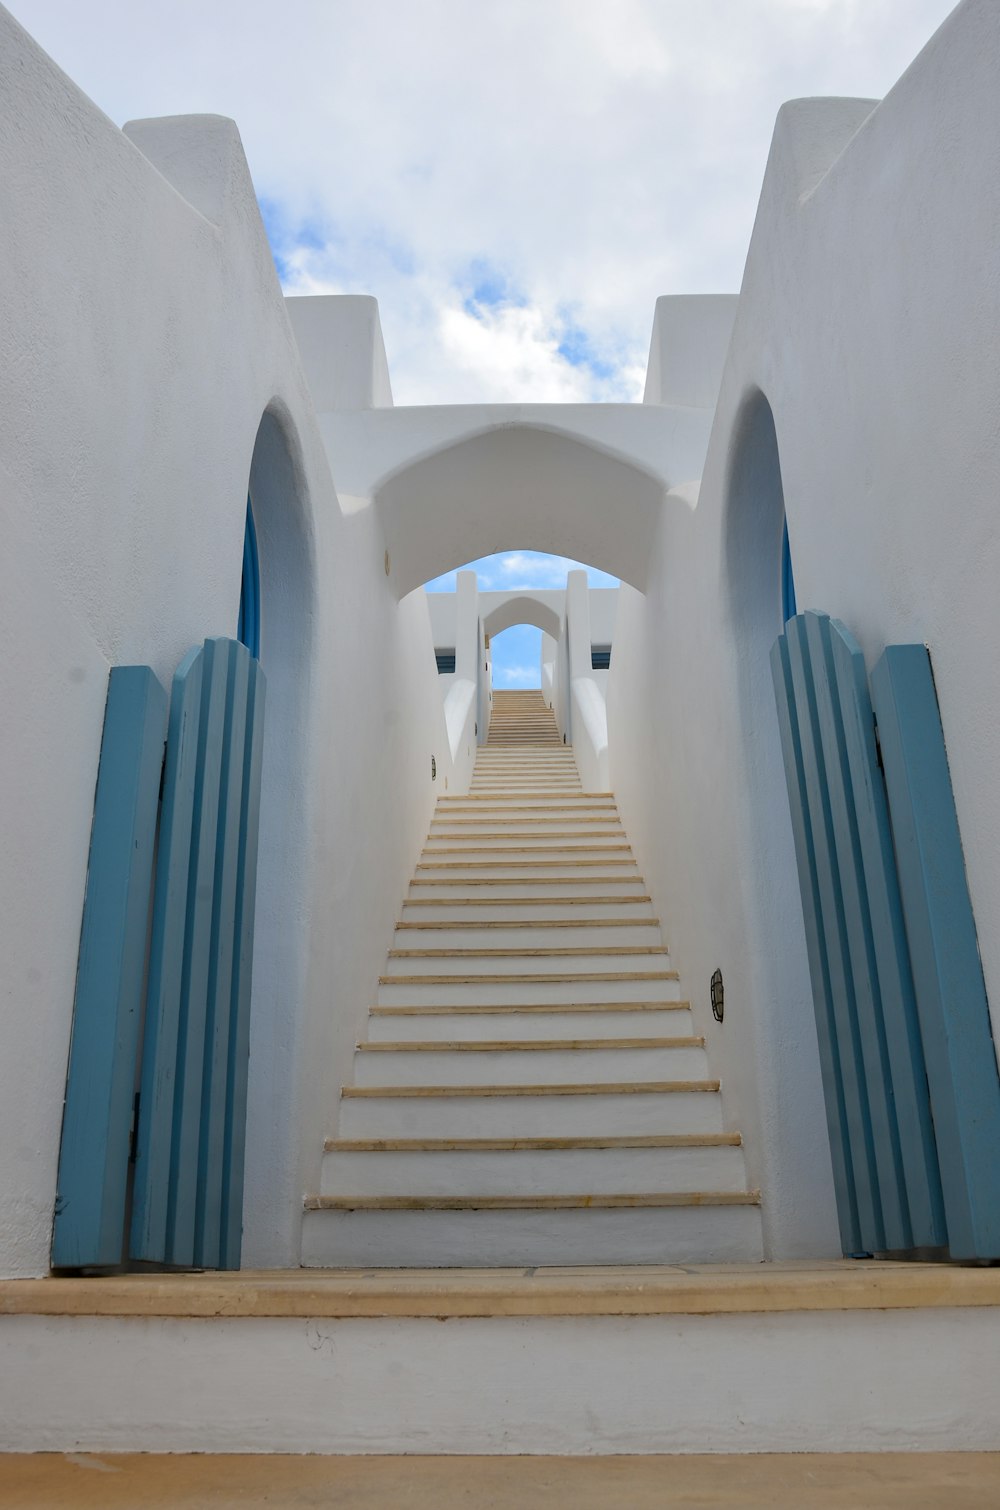 昼間の青空に浮かぶ白いコンクリートの階段